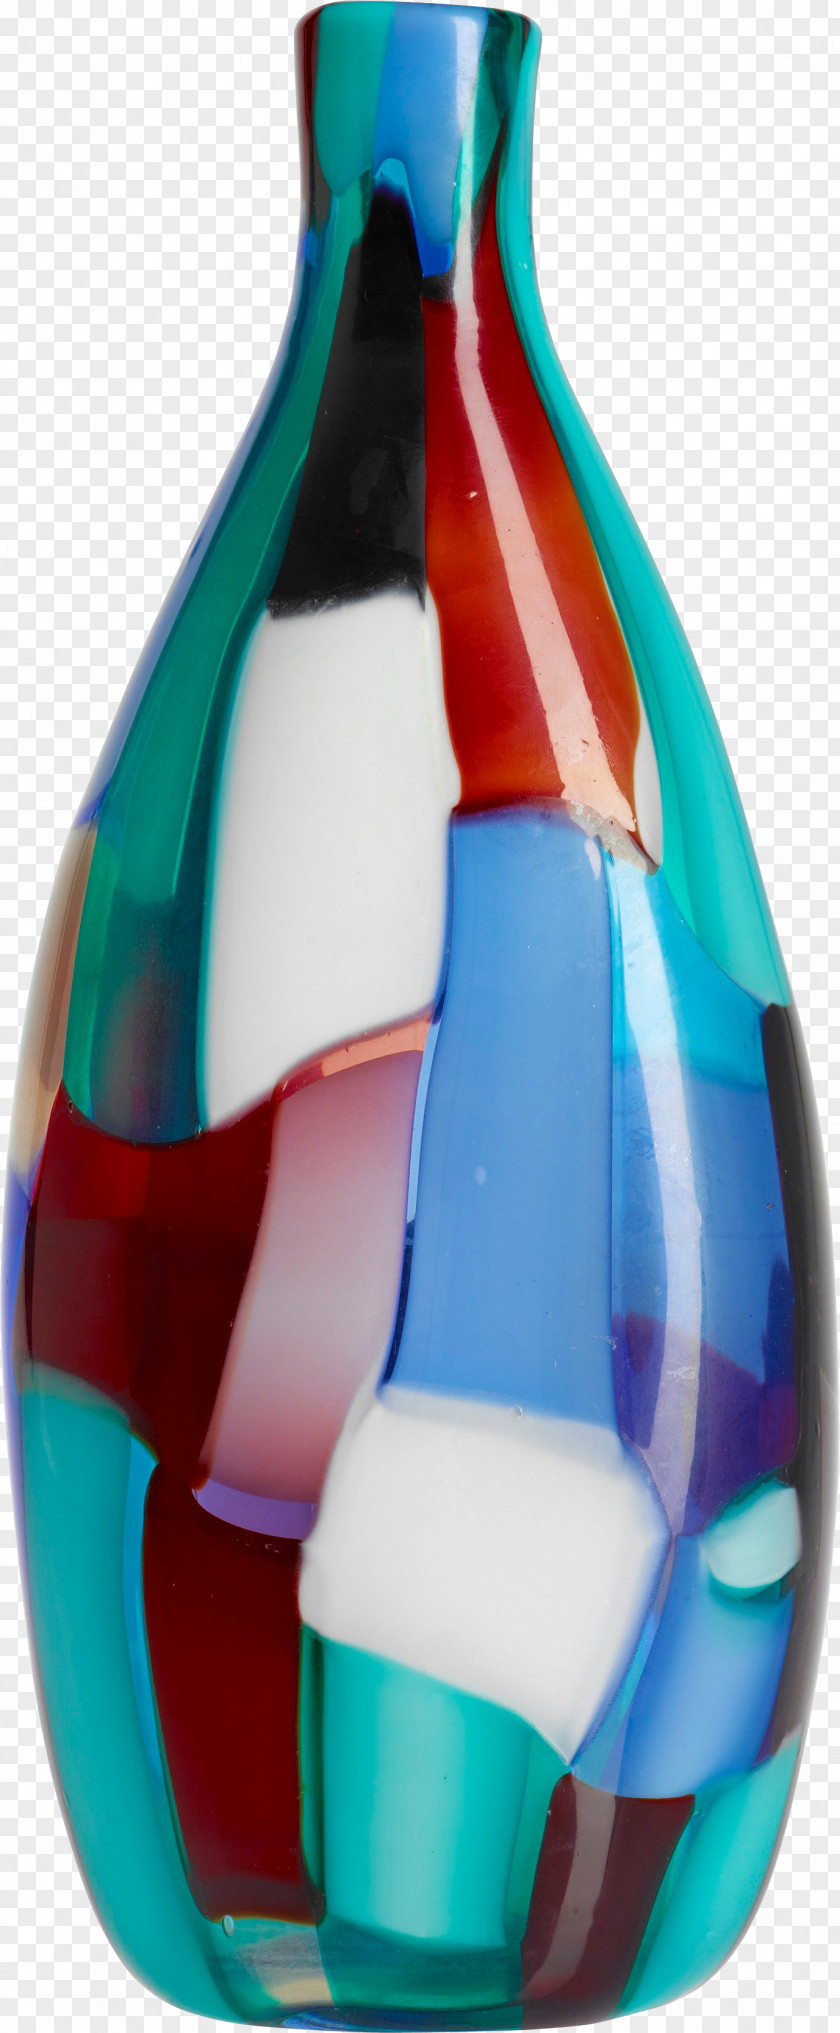 Vase Blue Bottle Glass PNG